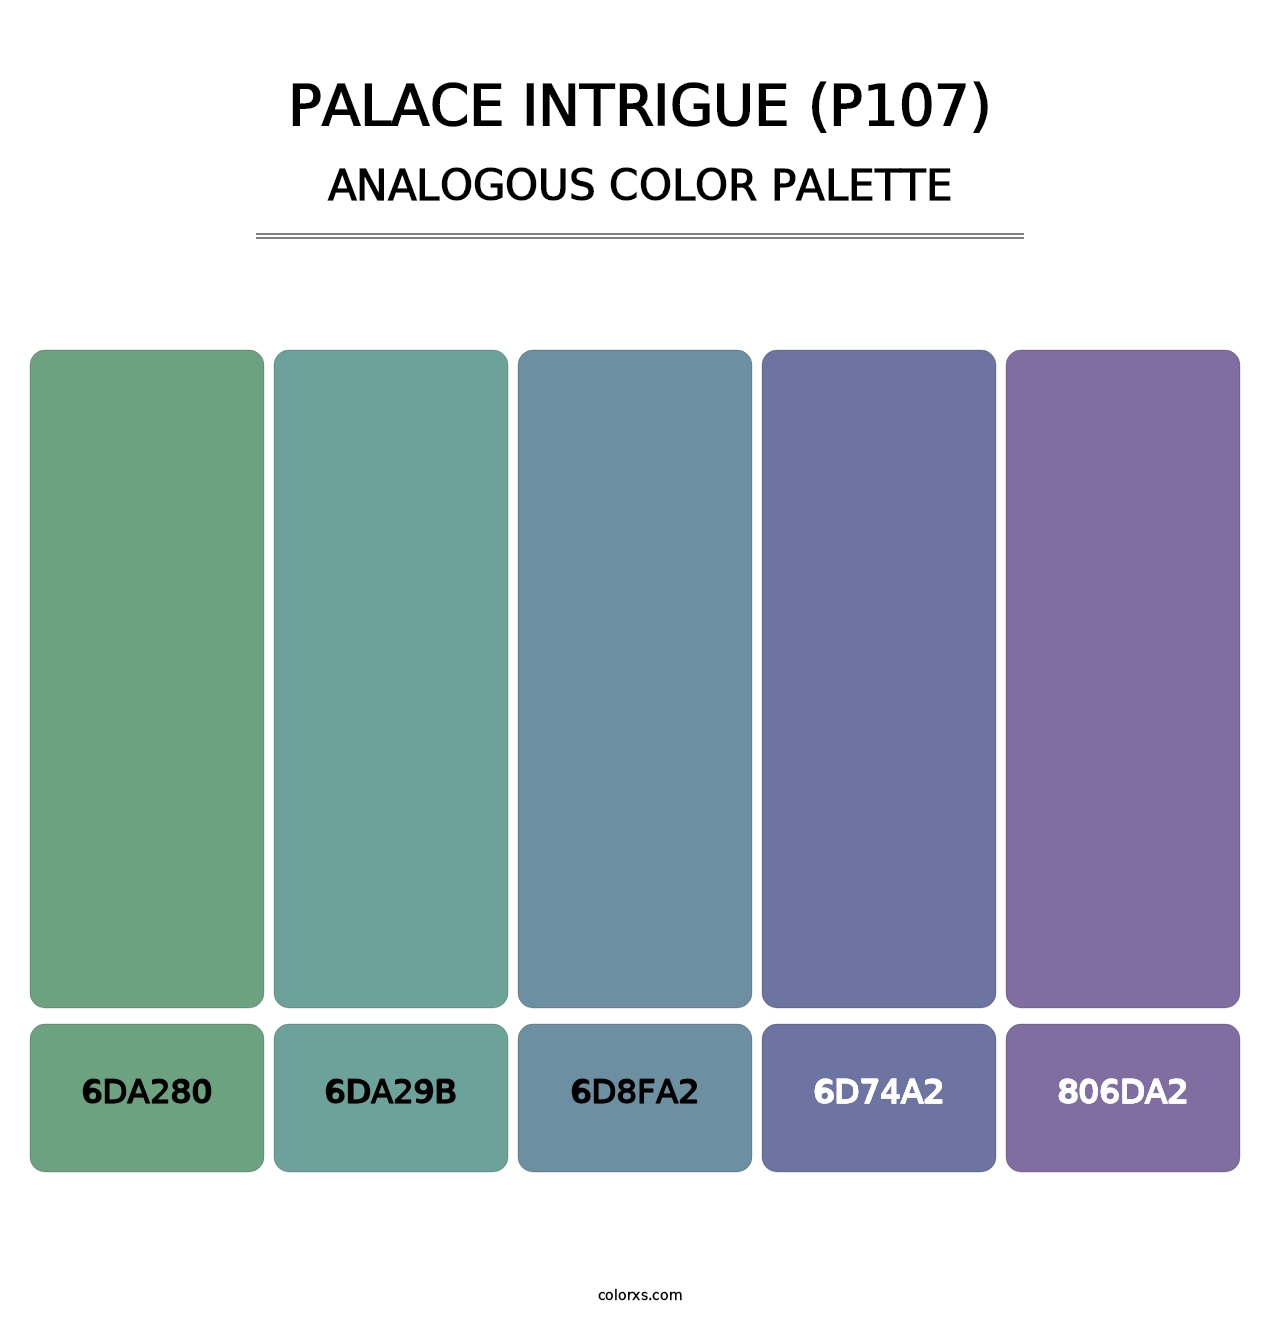 Palace Intrigue (P107) - Analogous Color Palette